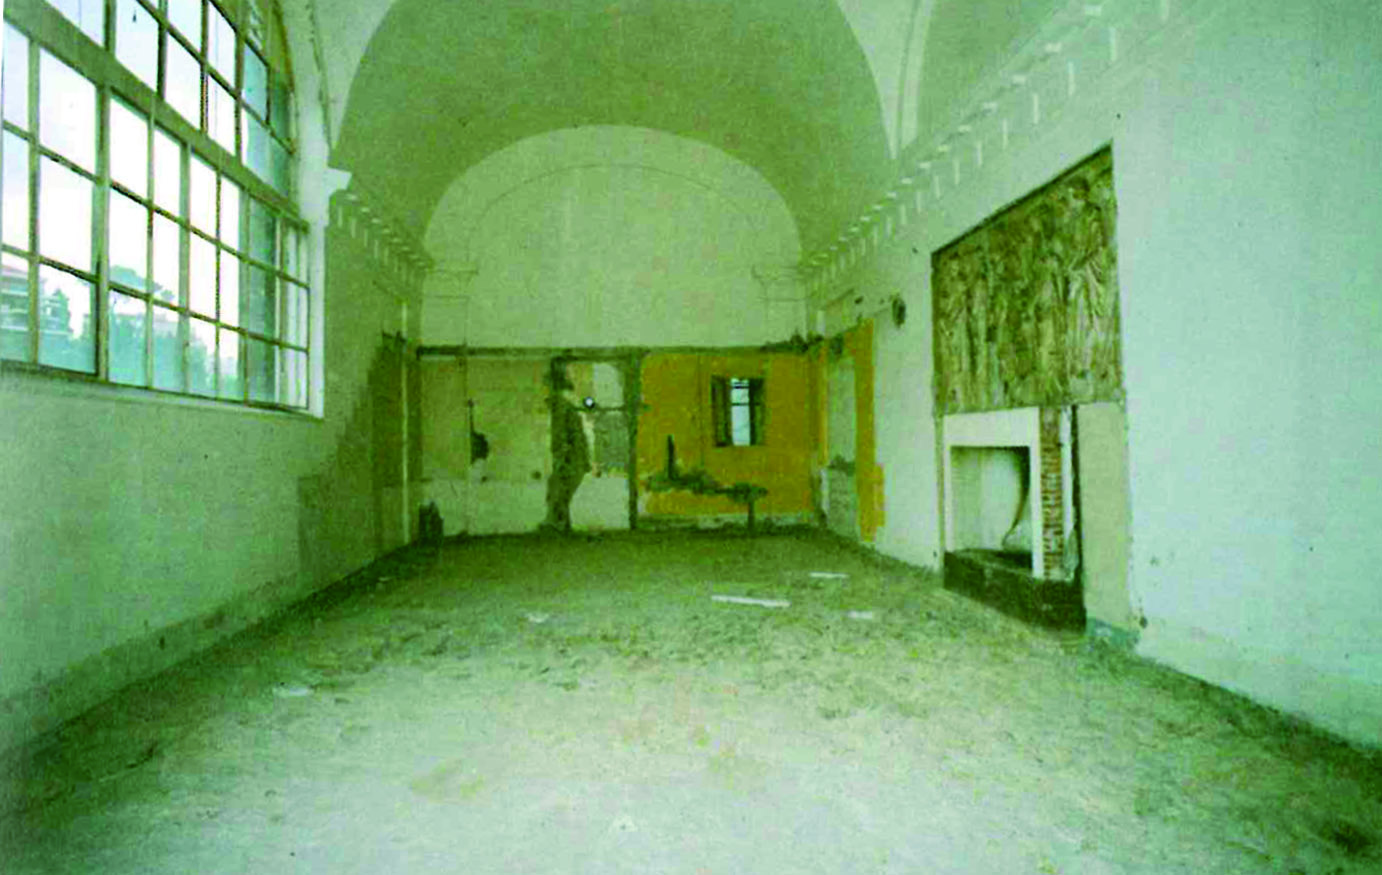 Sala dell’Ercole Farnese dopo la rimozione delle sovrastrutture (da Lucchini, Pallavicini, La Villa Poniatowski sulla via Flaminia, 1993)